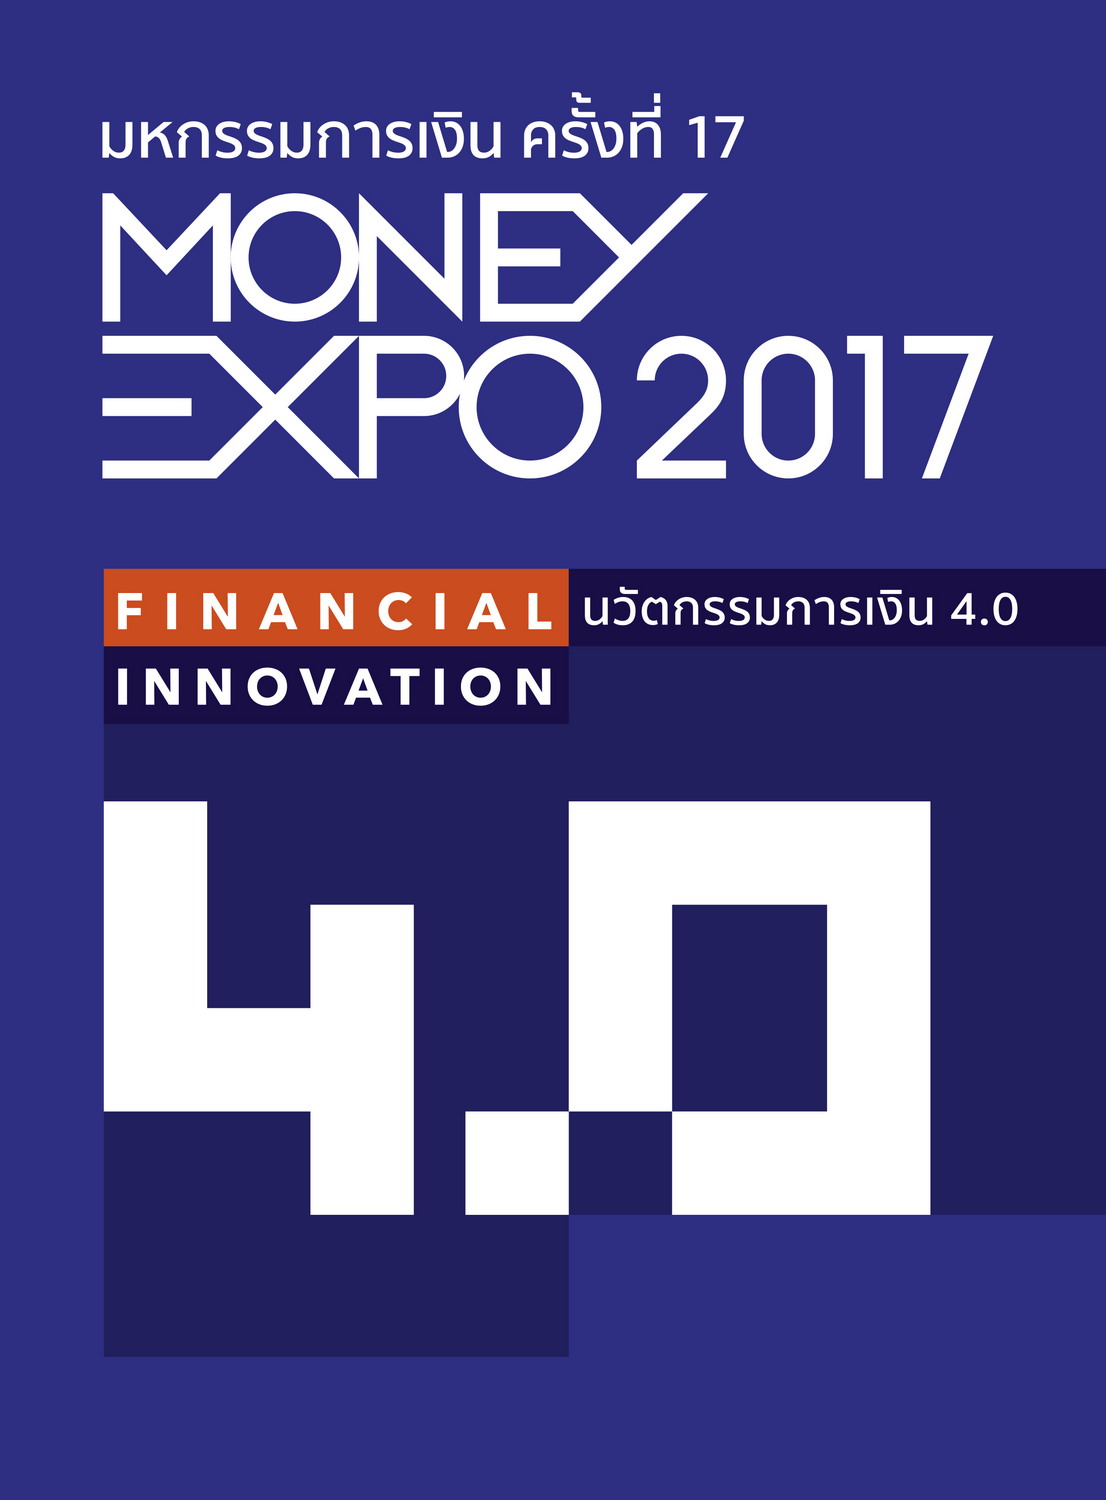 งานมหกรรมการเงินMoney Expo พัทยา ครั้งที่ 7 จังหวัดชลบุรี